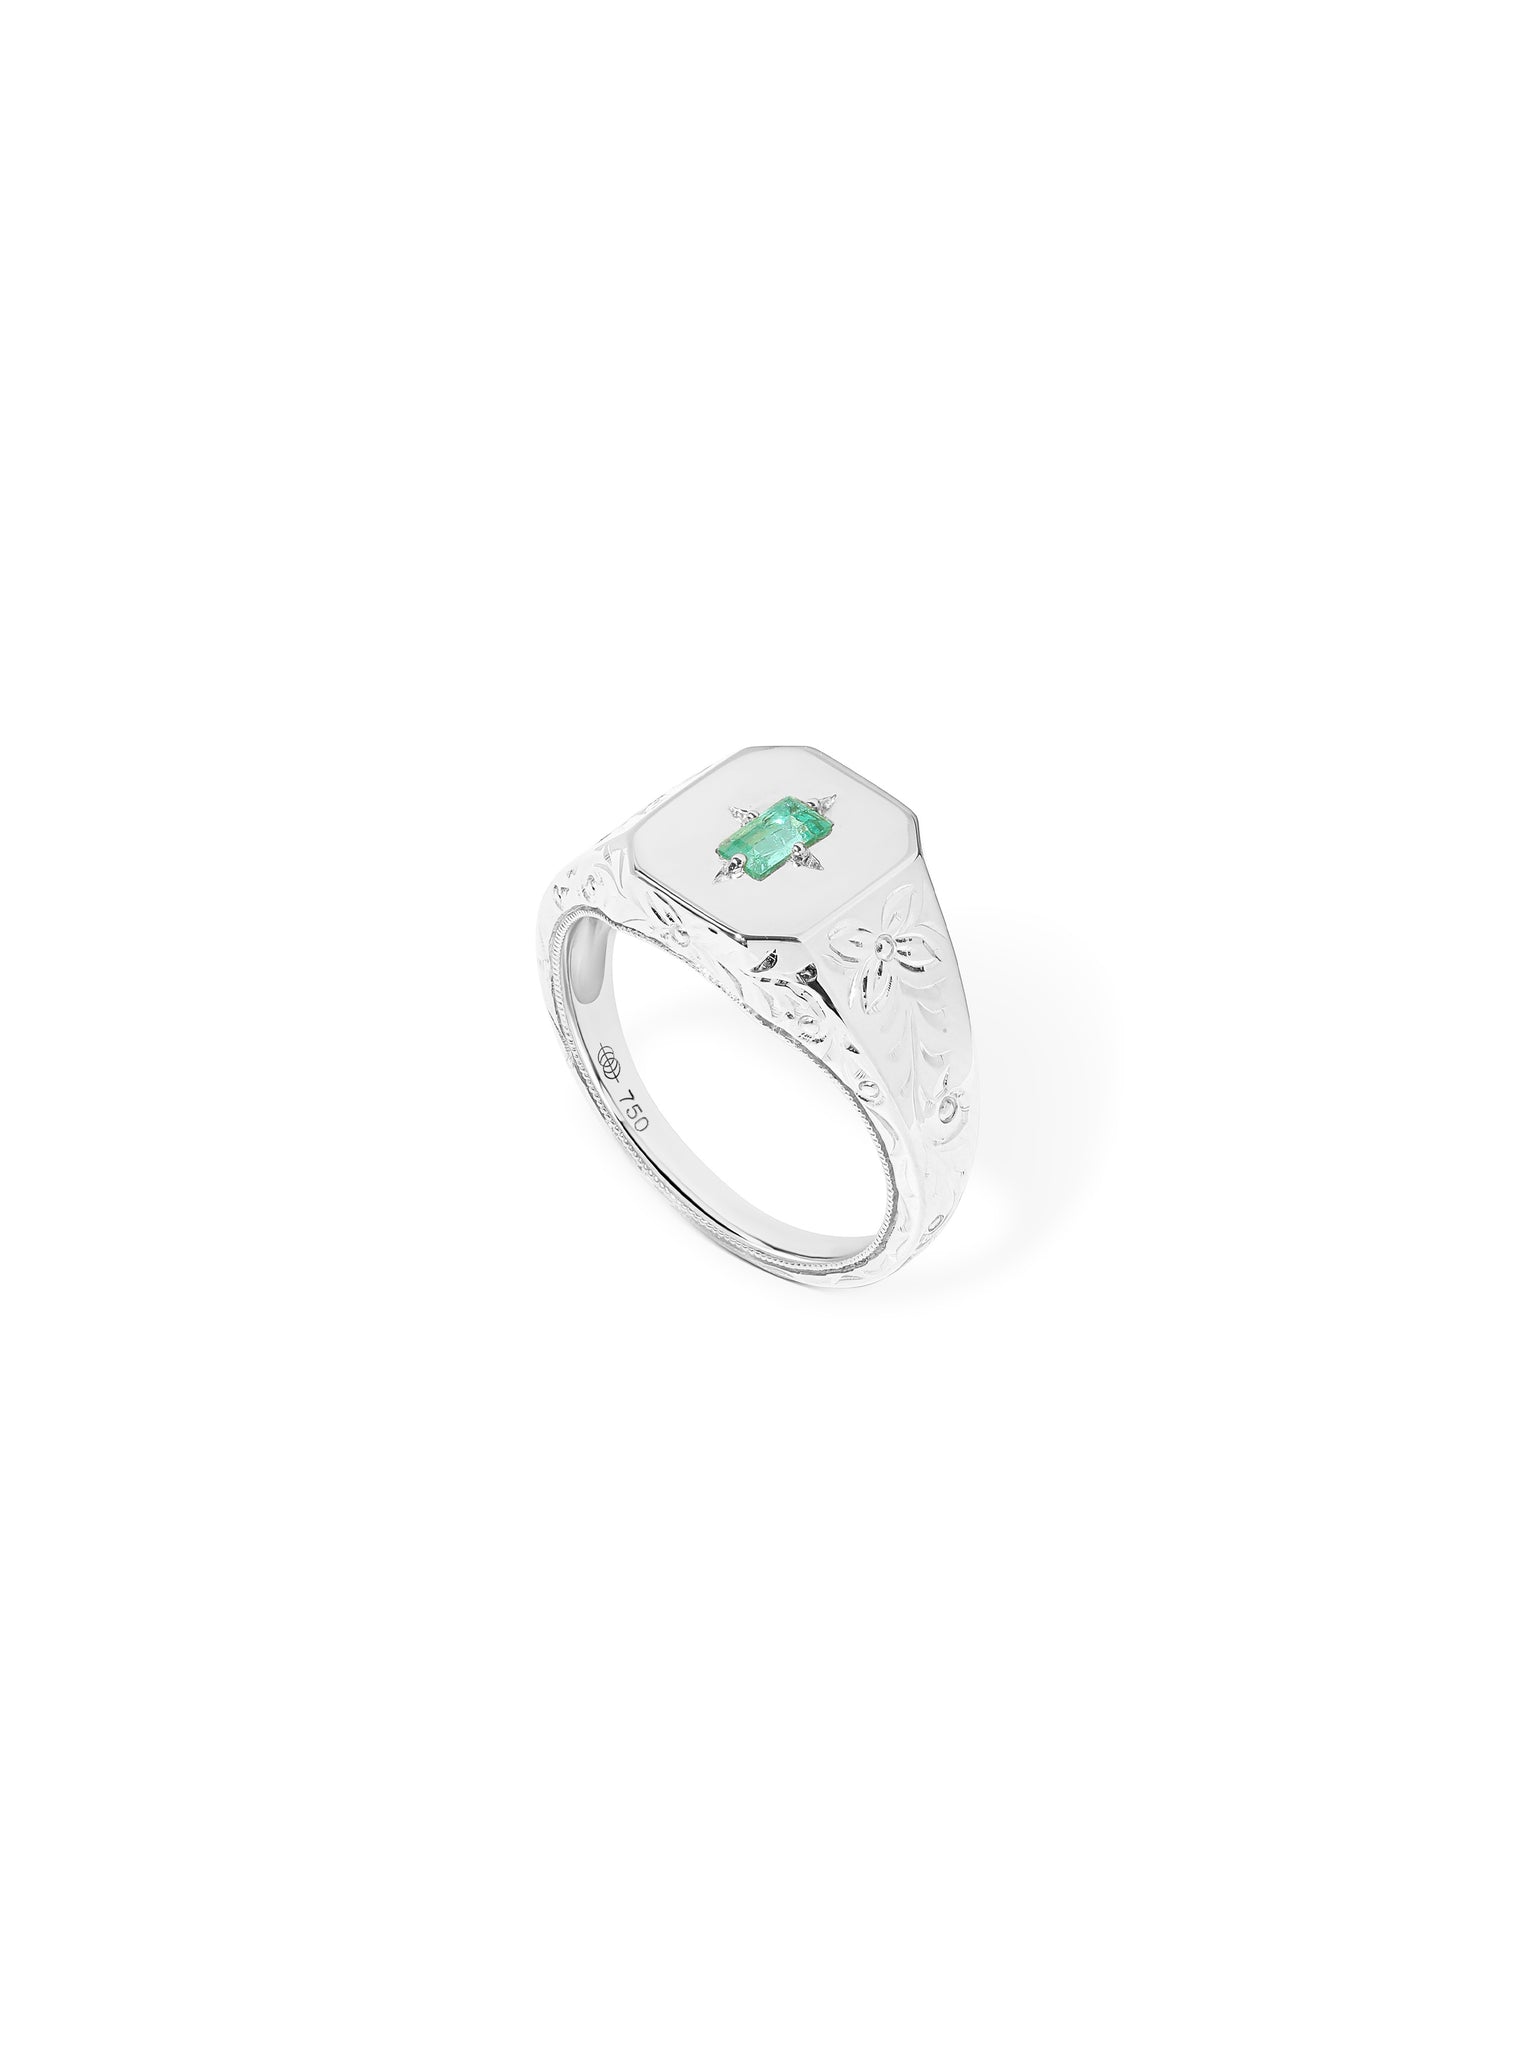 Spade Warisan Minor Emerald Signet Ring